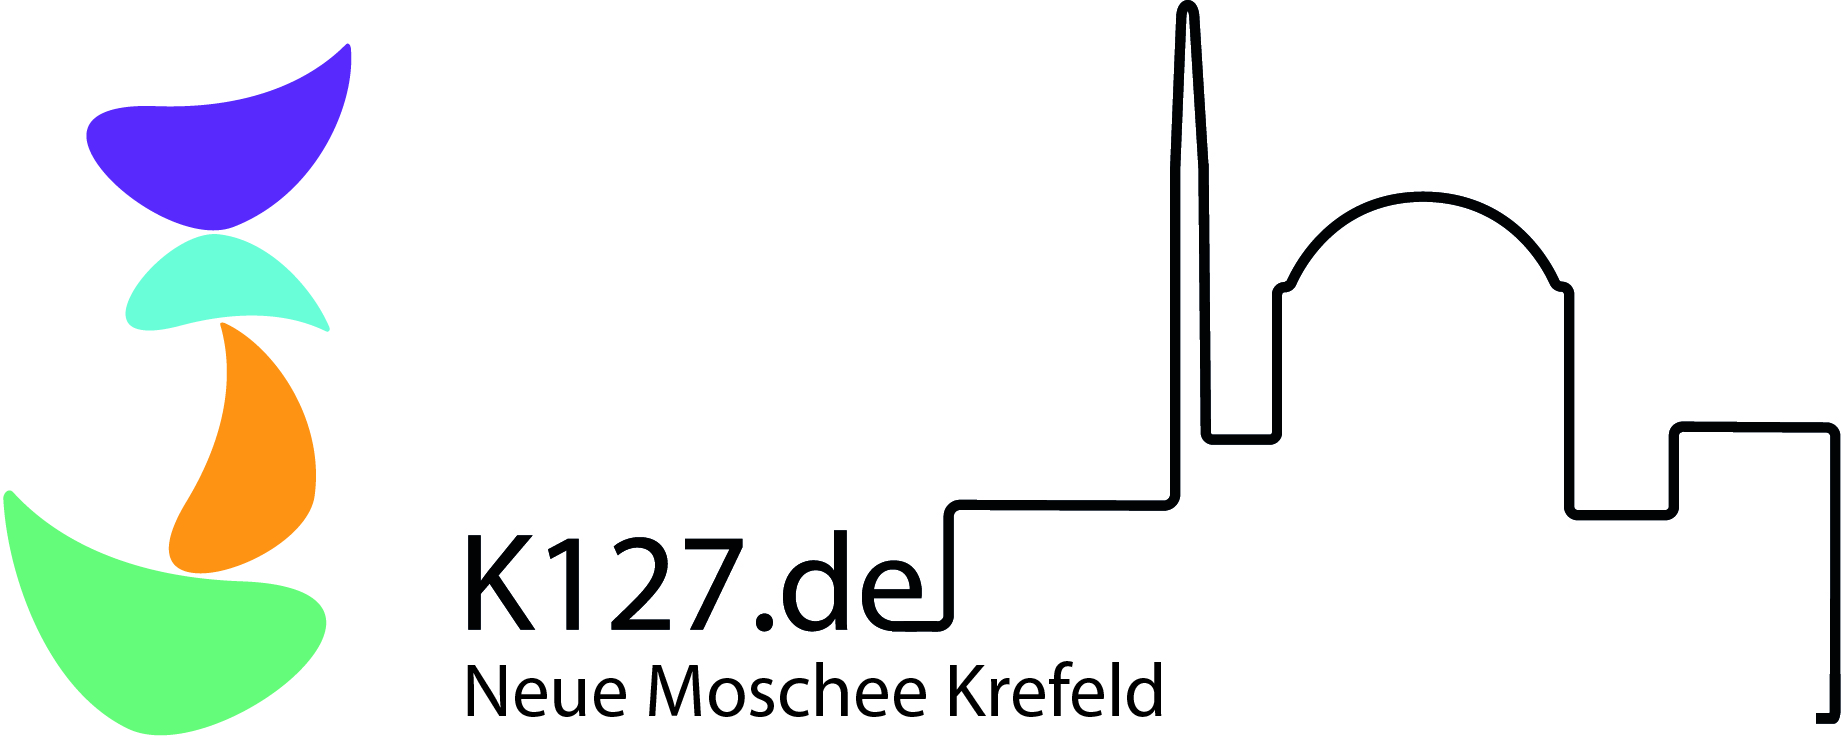 Logo Neue Moschee Krefeld, futureorg Institut